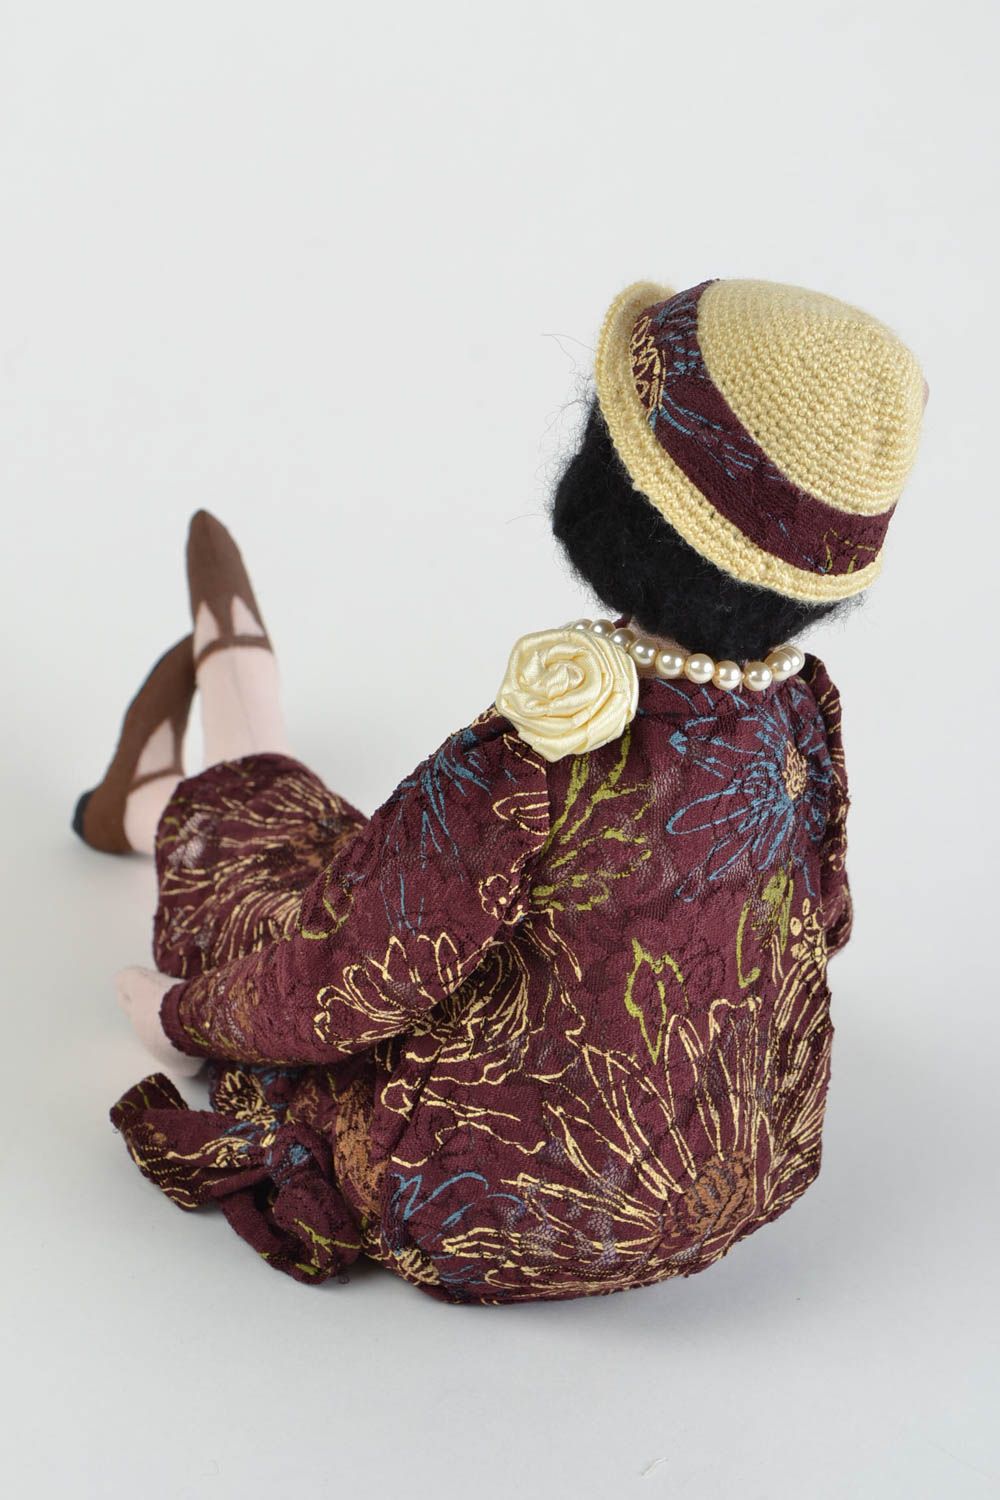 Кукла для интерьера и детей тканевая мягкая игрушка ручной работы Анна фото 5